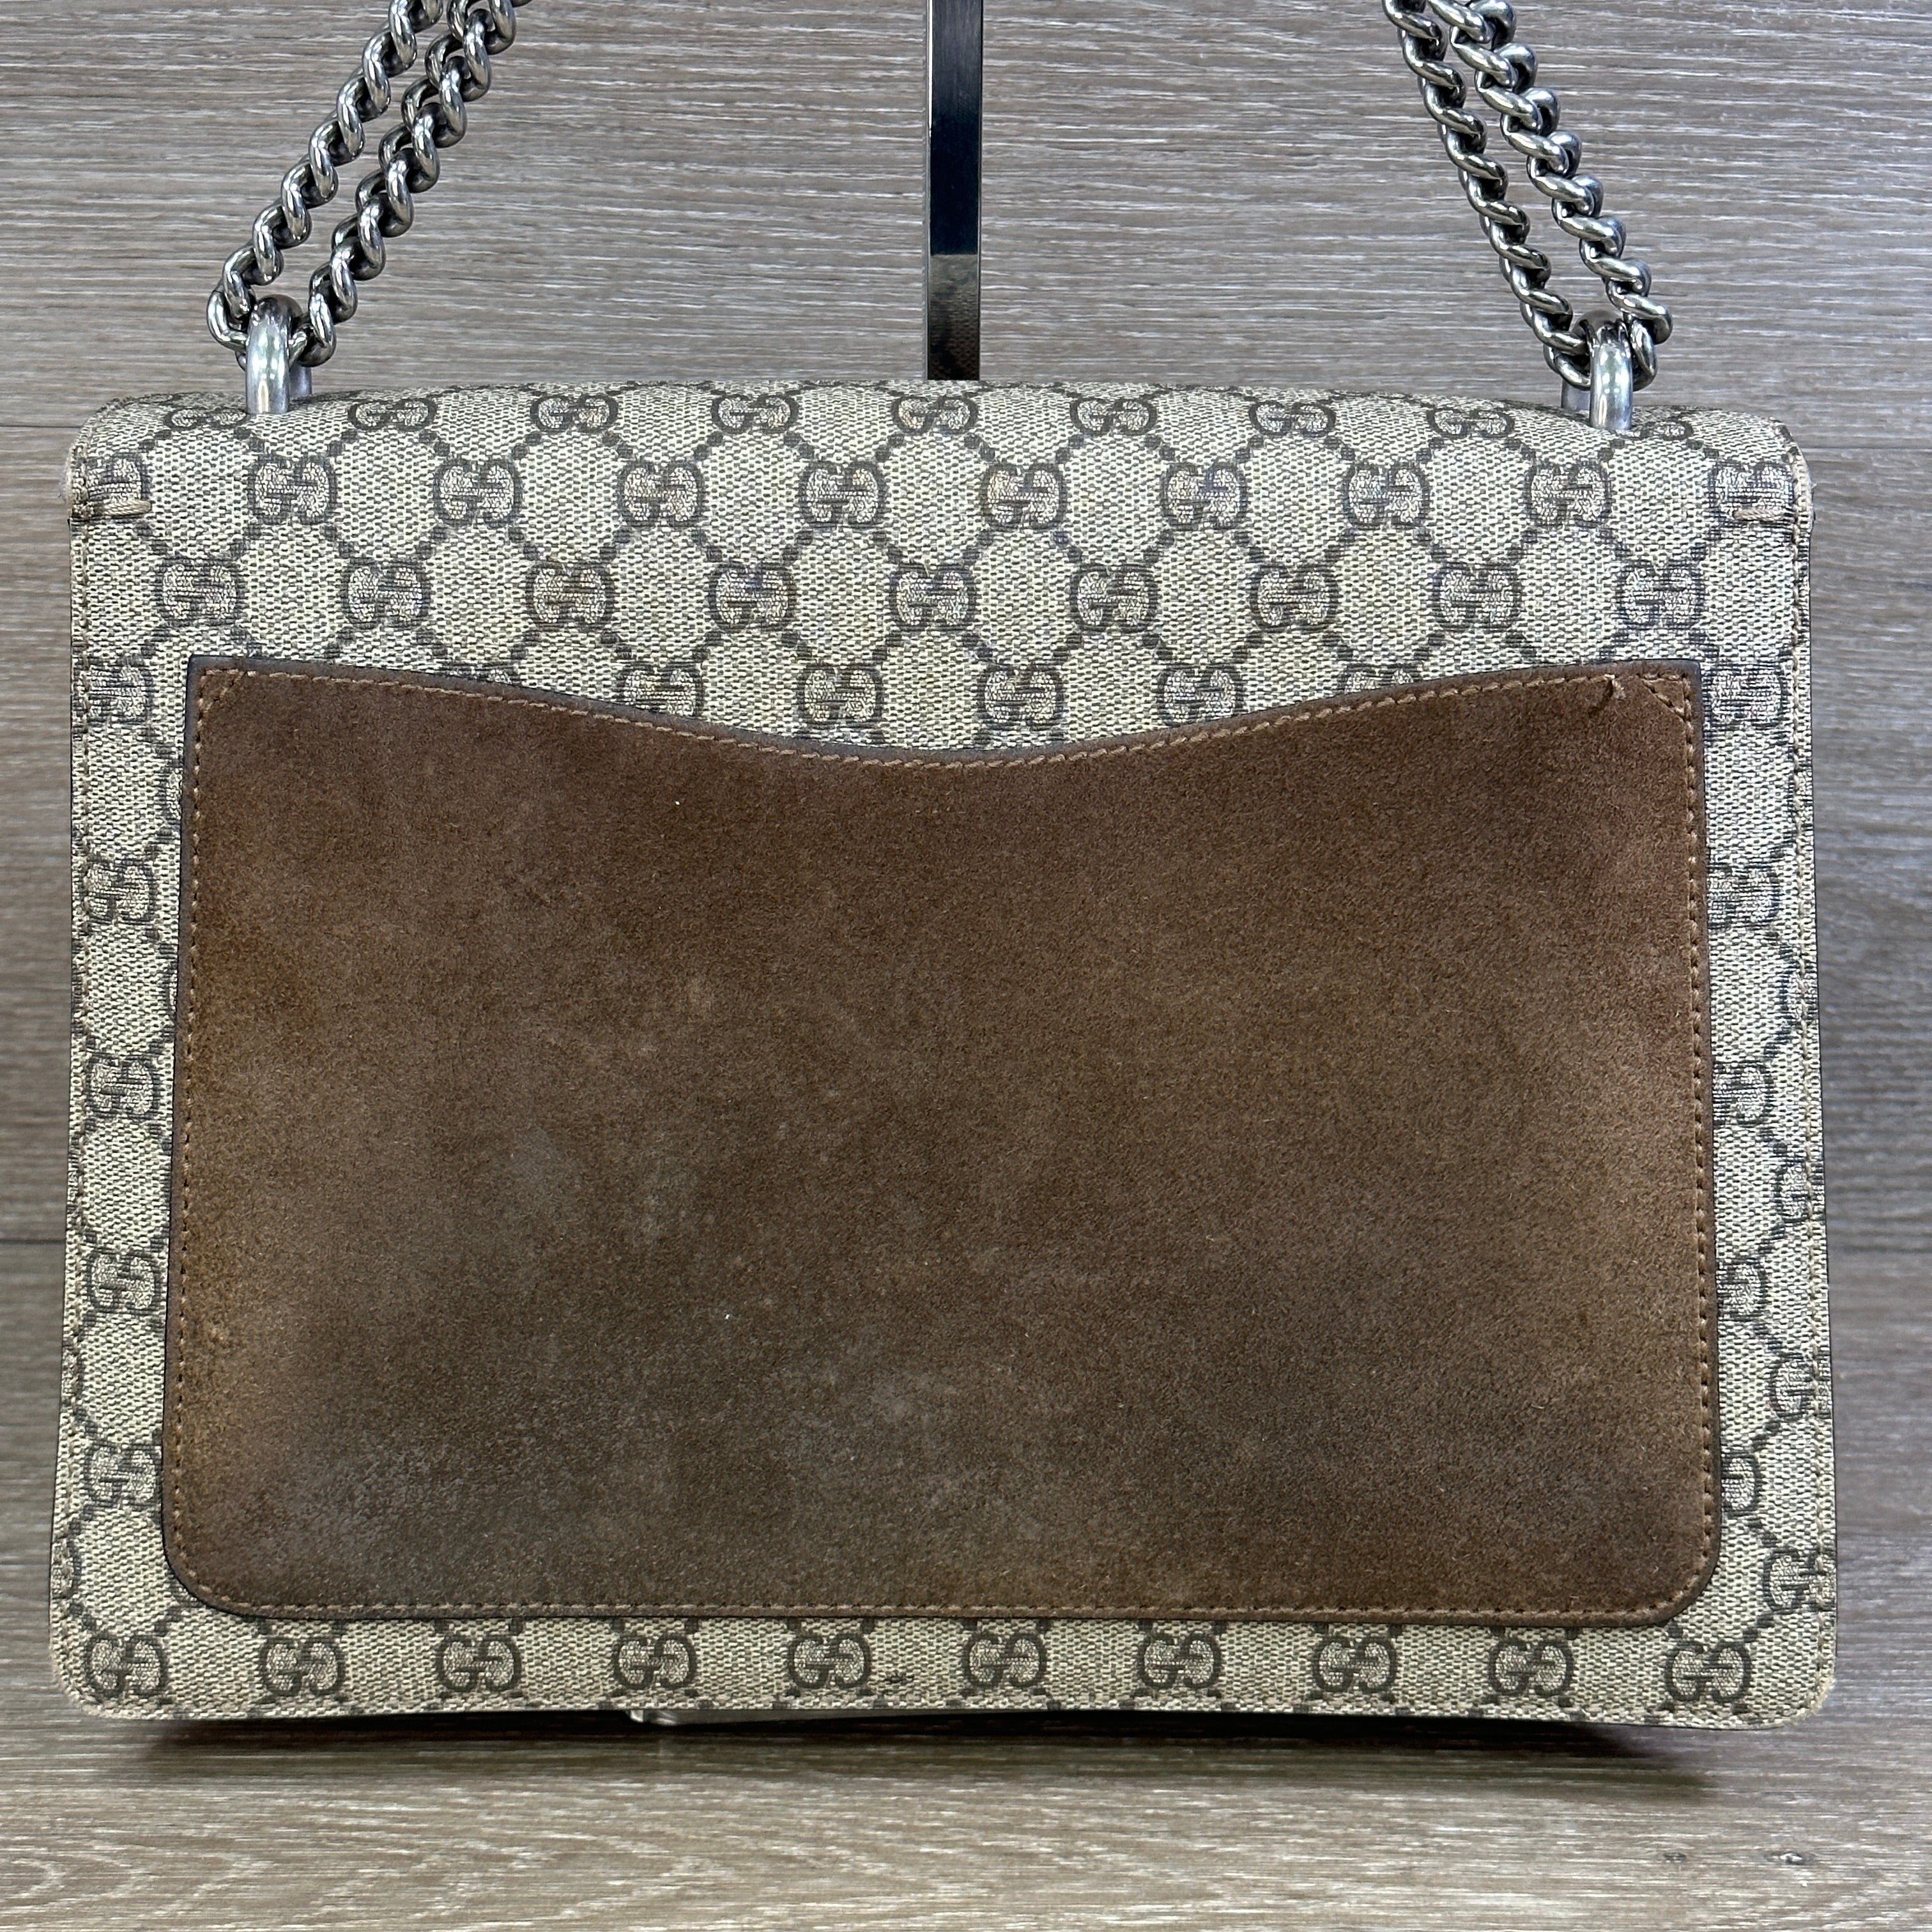 Louis Vuitton Supreme Authenticated Bag Charm